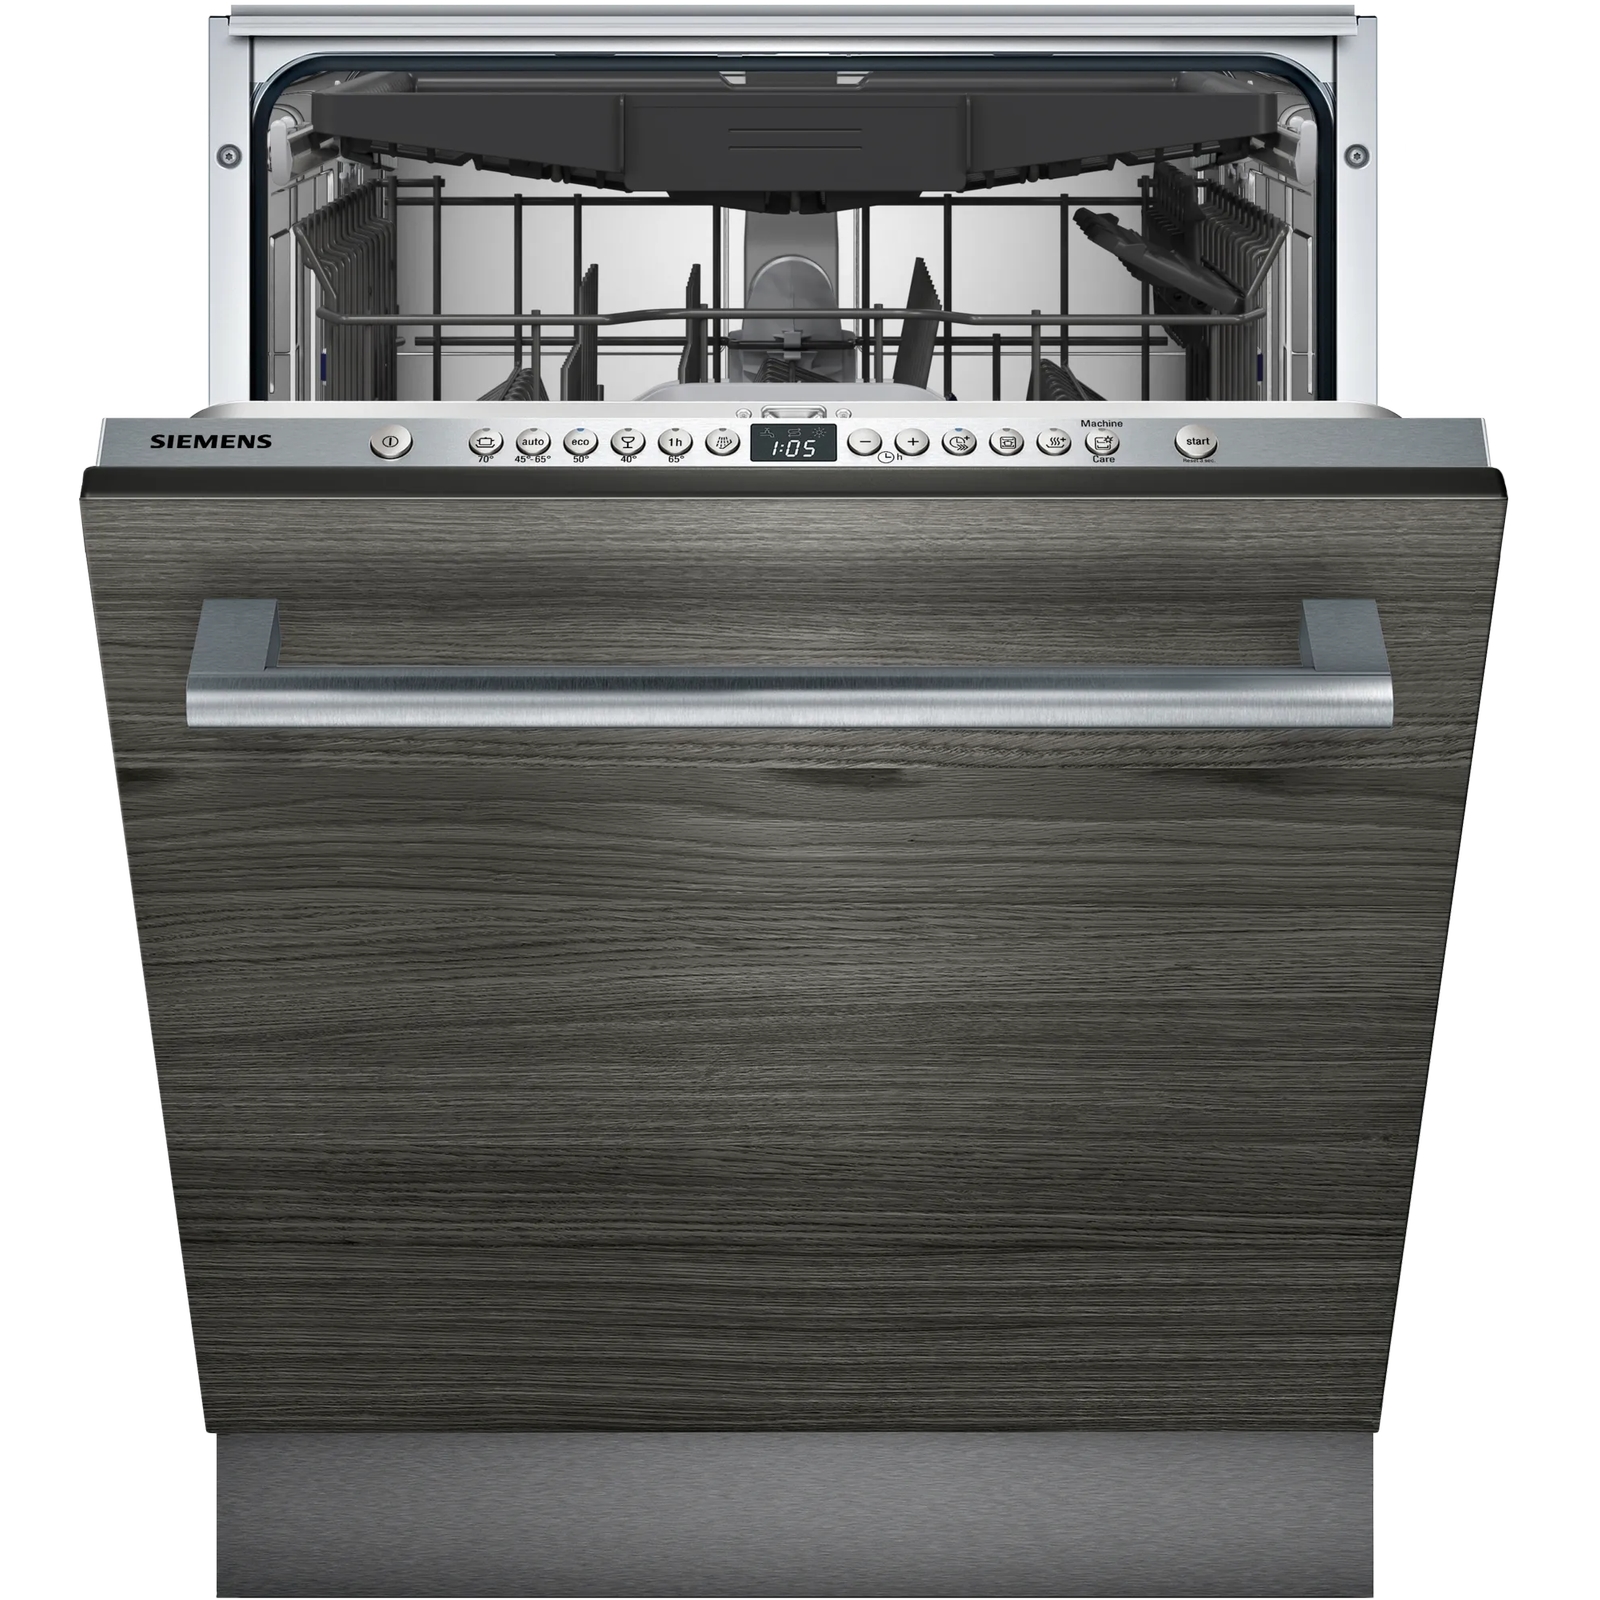 Встраиваемая посудомоечная машина Siemens SN636X06KE встраиваемая посудомоечная машина siemens sn63hx52ce